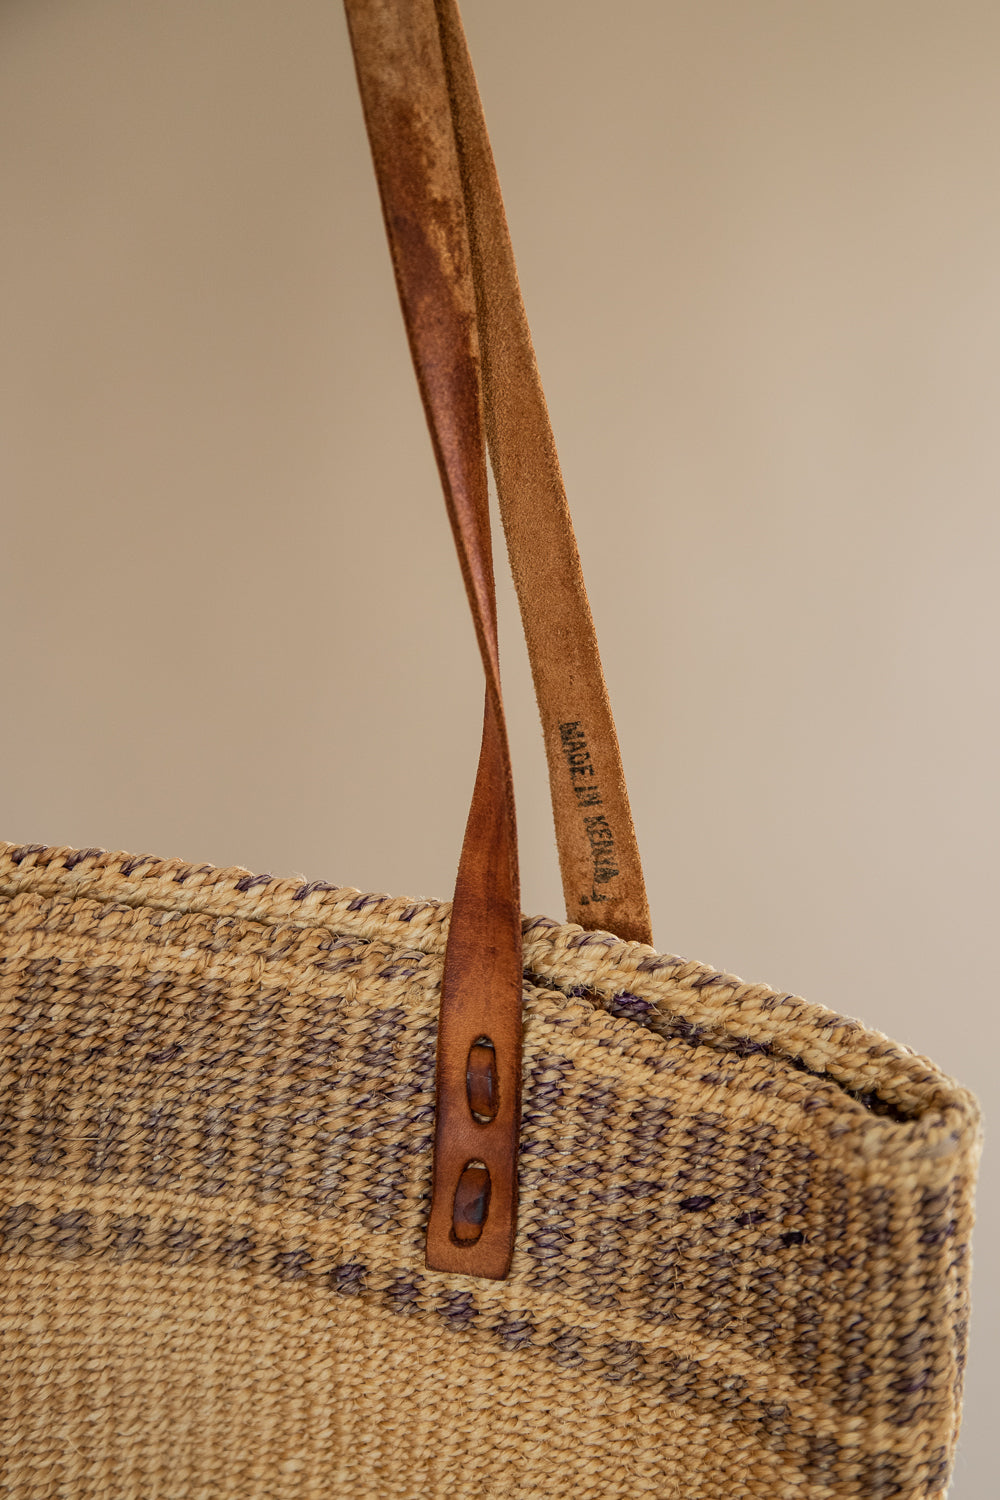 African sisal hand bag hand woven leather bag | NAHERI